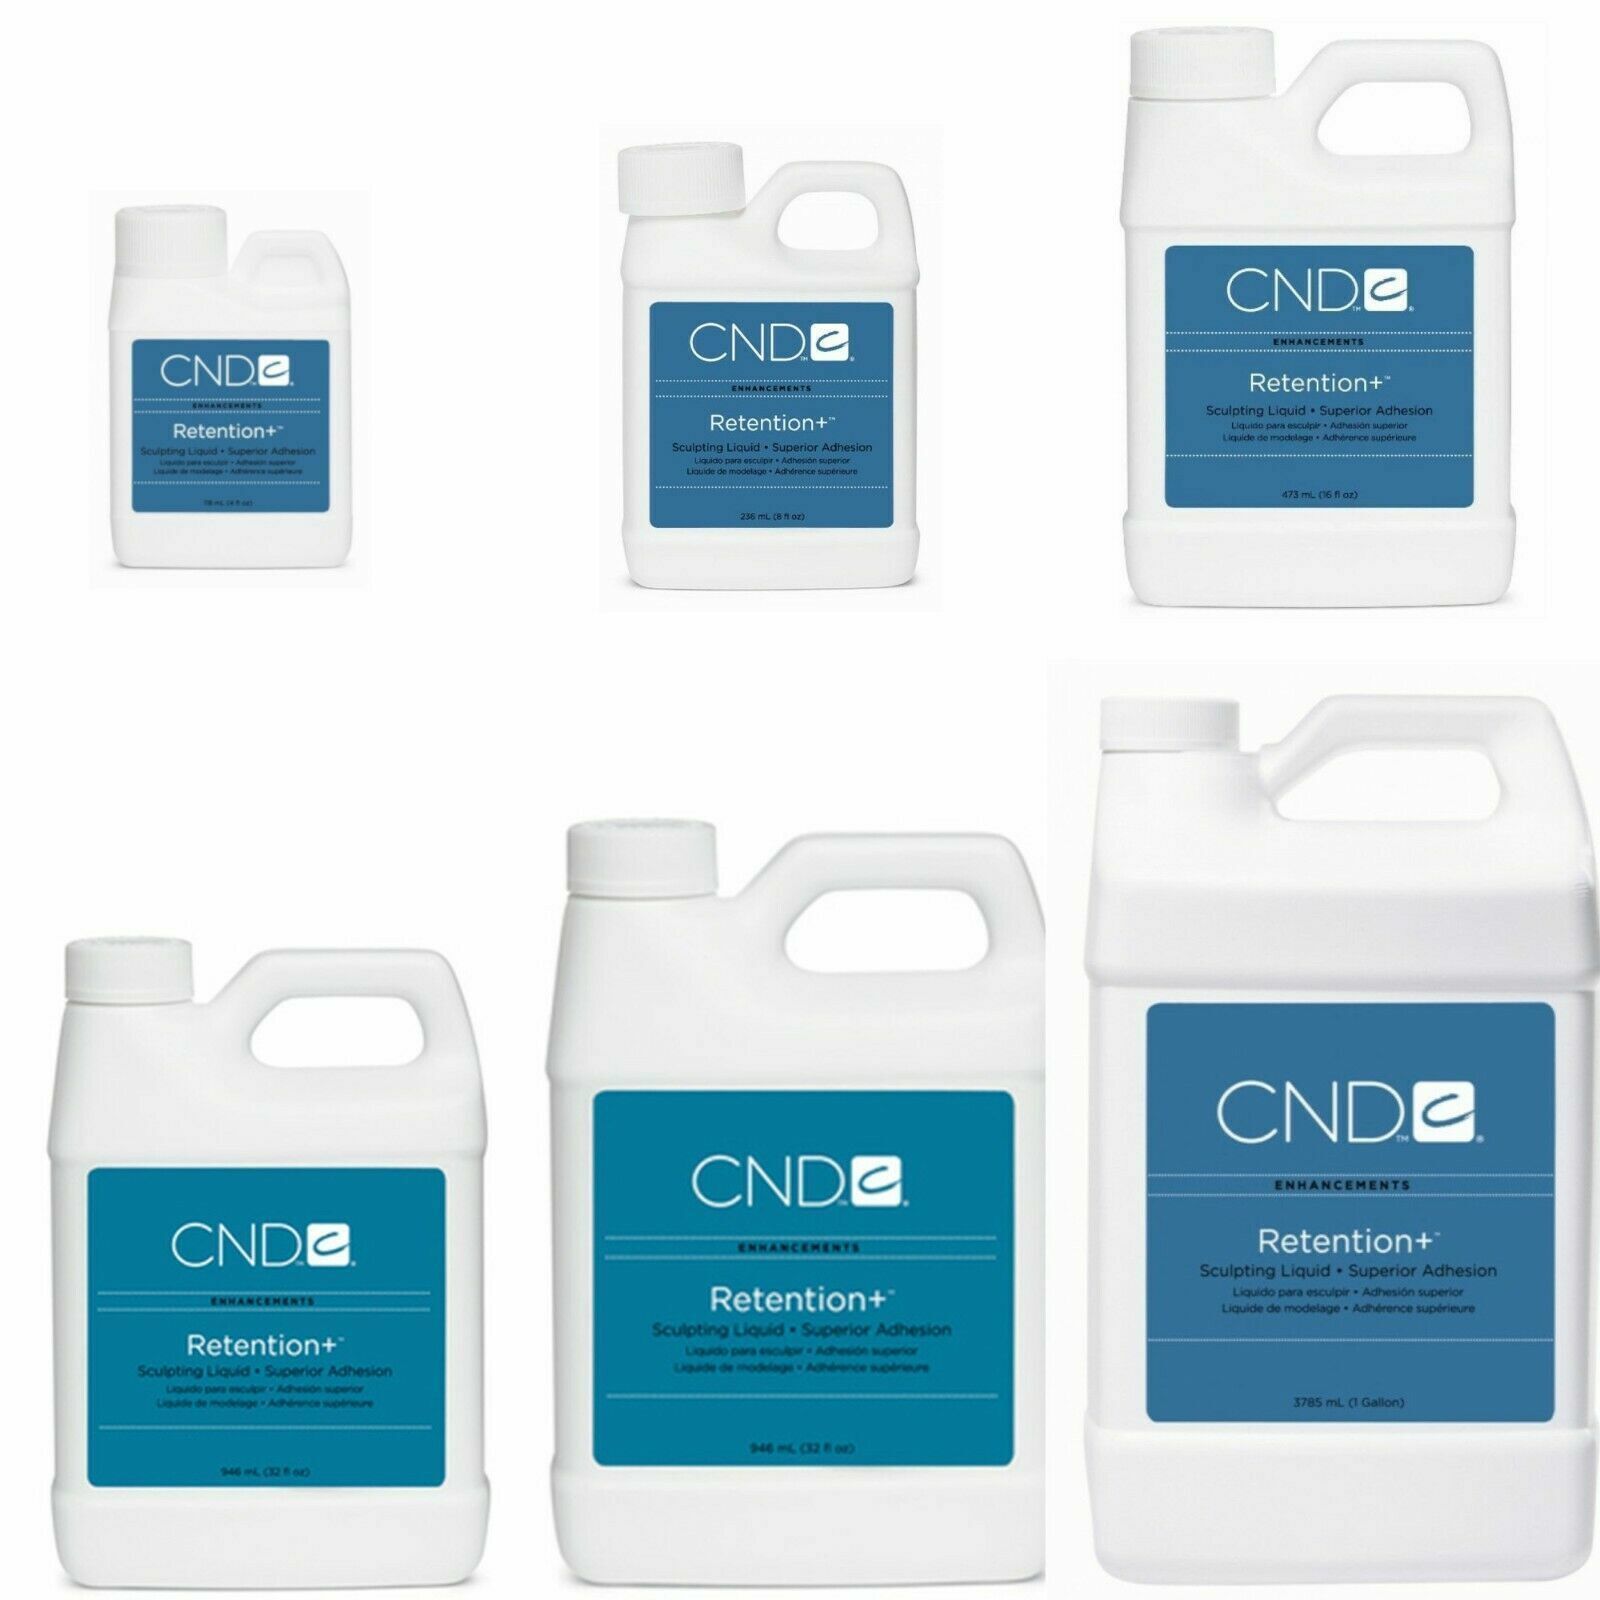 CND Liquid Retention + False Nails: 4 oz, 8 oz, 16 oz, 32 oz, 64 oz, or 128 oz.  - $21.67 - $183.10